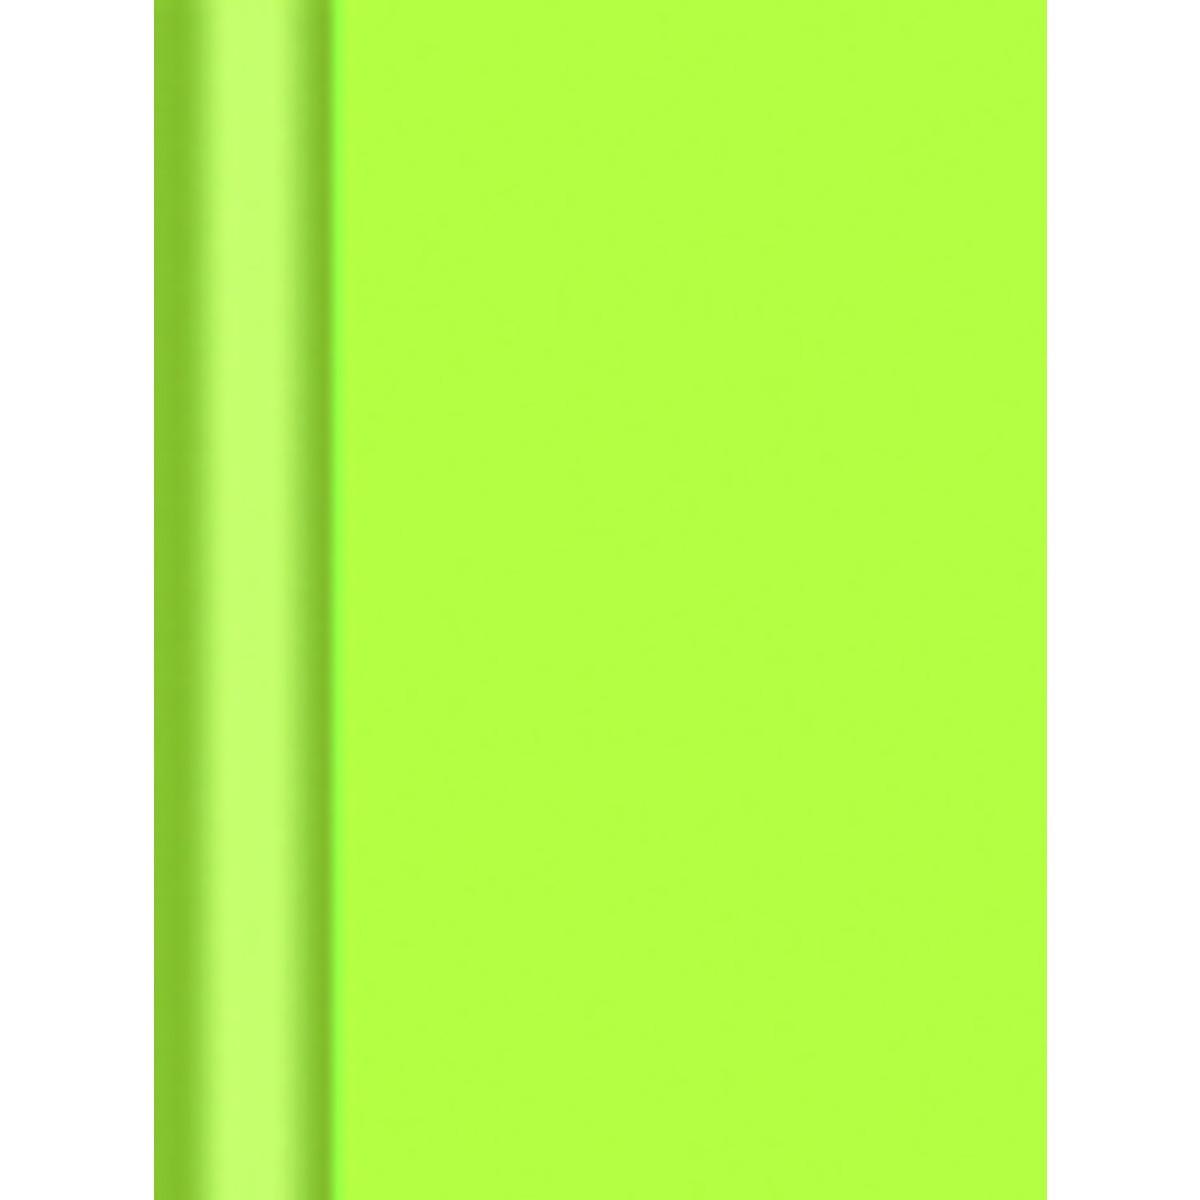 Nappe en rouleau Intissé  Gappy - Blanc  - 4,5 x 1,20 m - Intissé - vert pistache